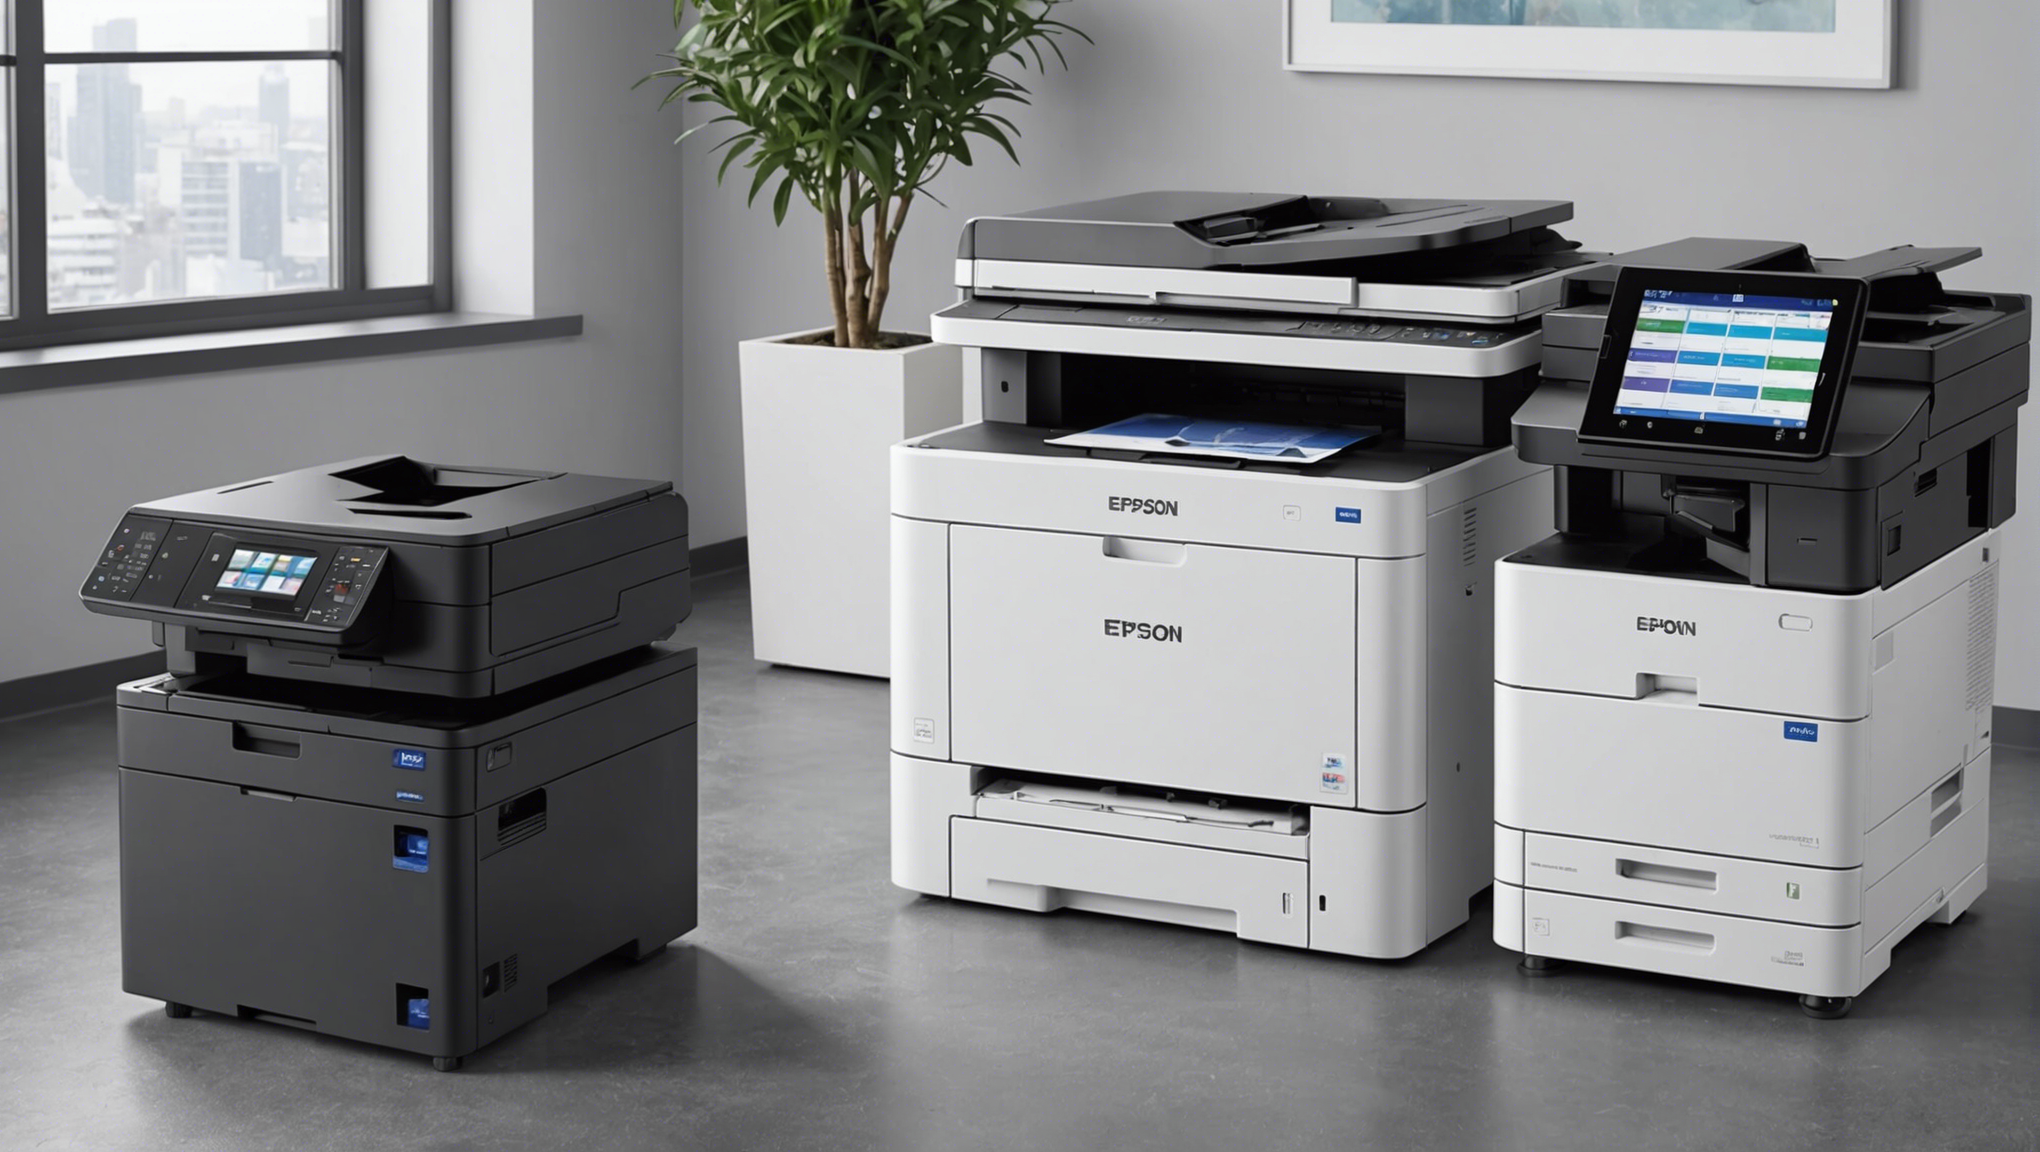 découvrez notre sélection d'imprimantes professionnelles epson à prix abordables pour répondre à tous vos besoins d'impression.